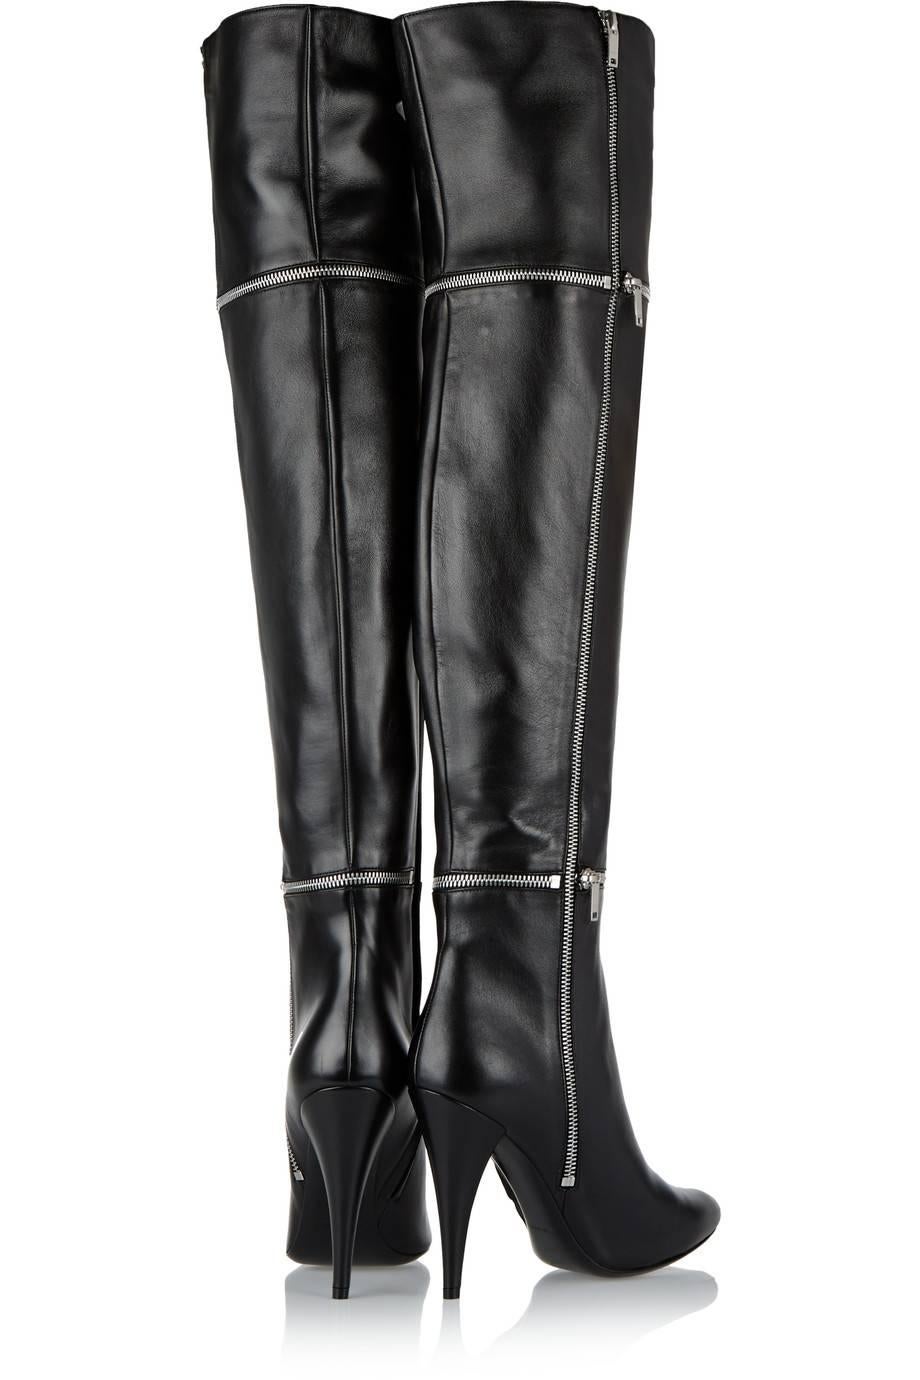 Women's Saint Laurent NEW Black Leather Zipper Over the Knee Heels Boots in Box